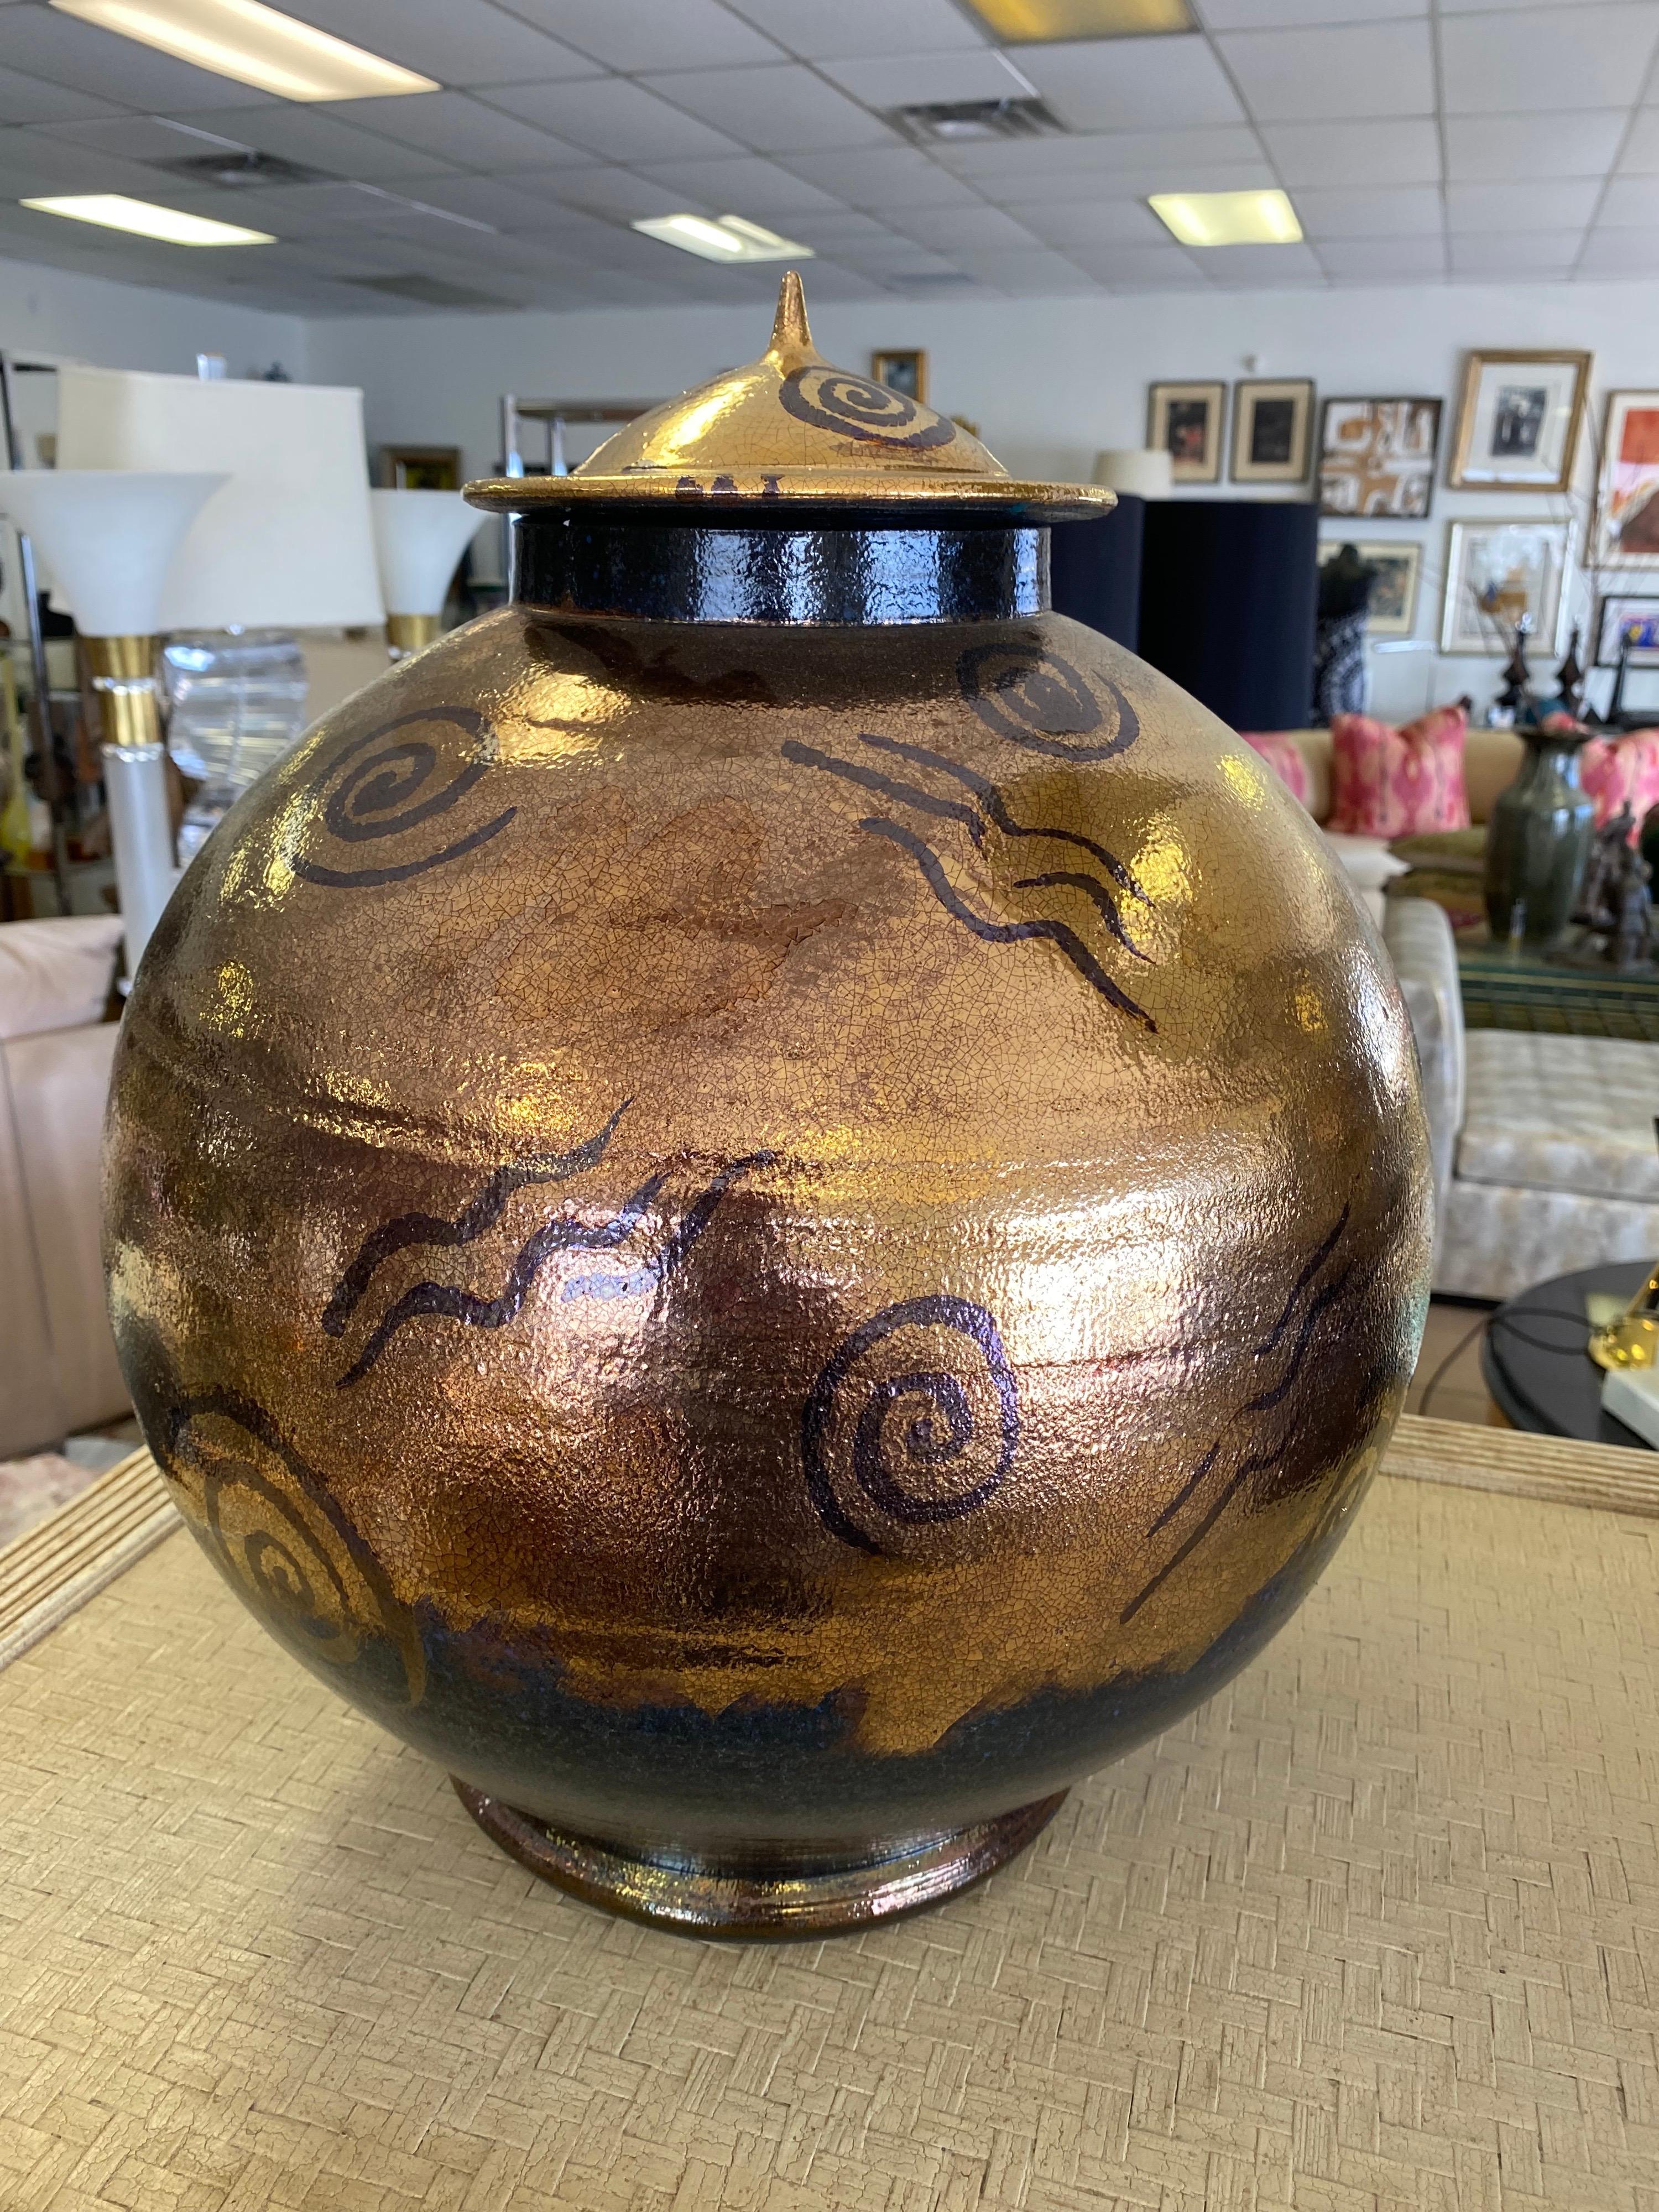 Il s'agit de l'une des meilleures pièces de poterie Raku conçues pour une propriété emblématique par feu Steve Chase. Un graphisme post-moderne des années 1980 sur une glaçure raku métallique de couleur bronze présente également des nuances de bleu